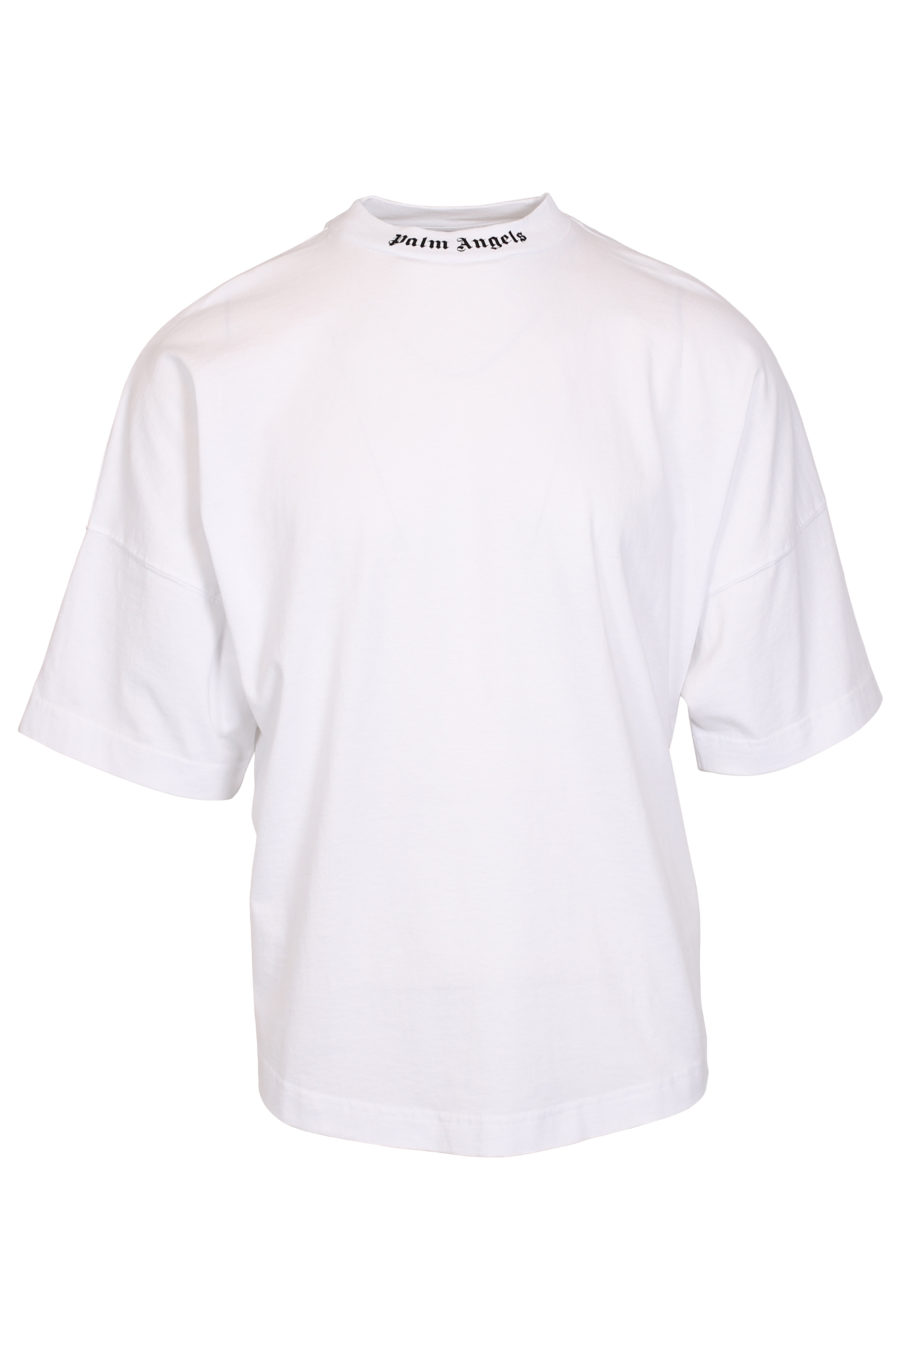 T-shirt blanc oversize avec logo sur le col - IMG 1032